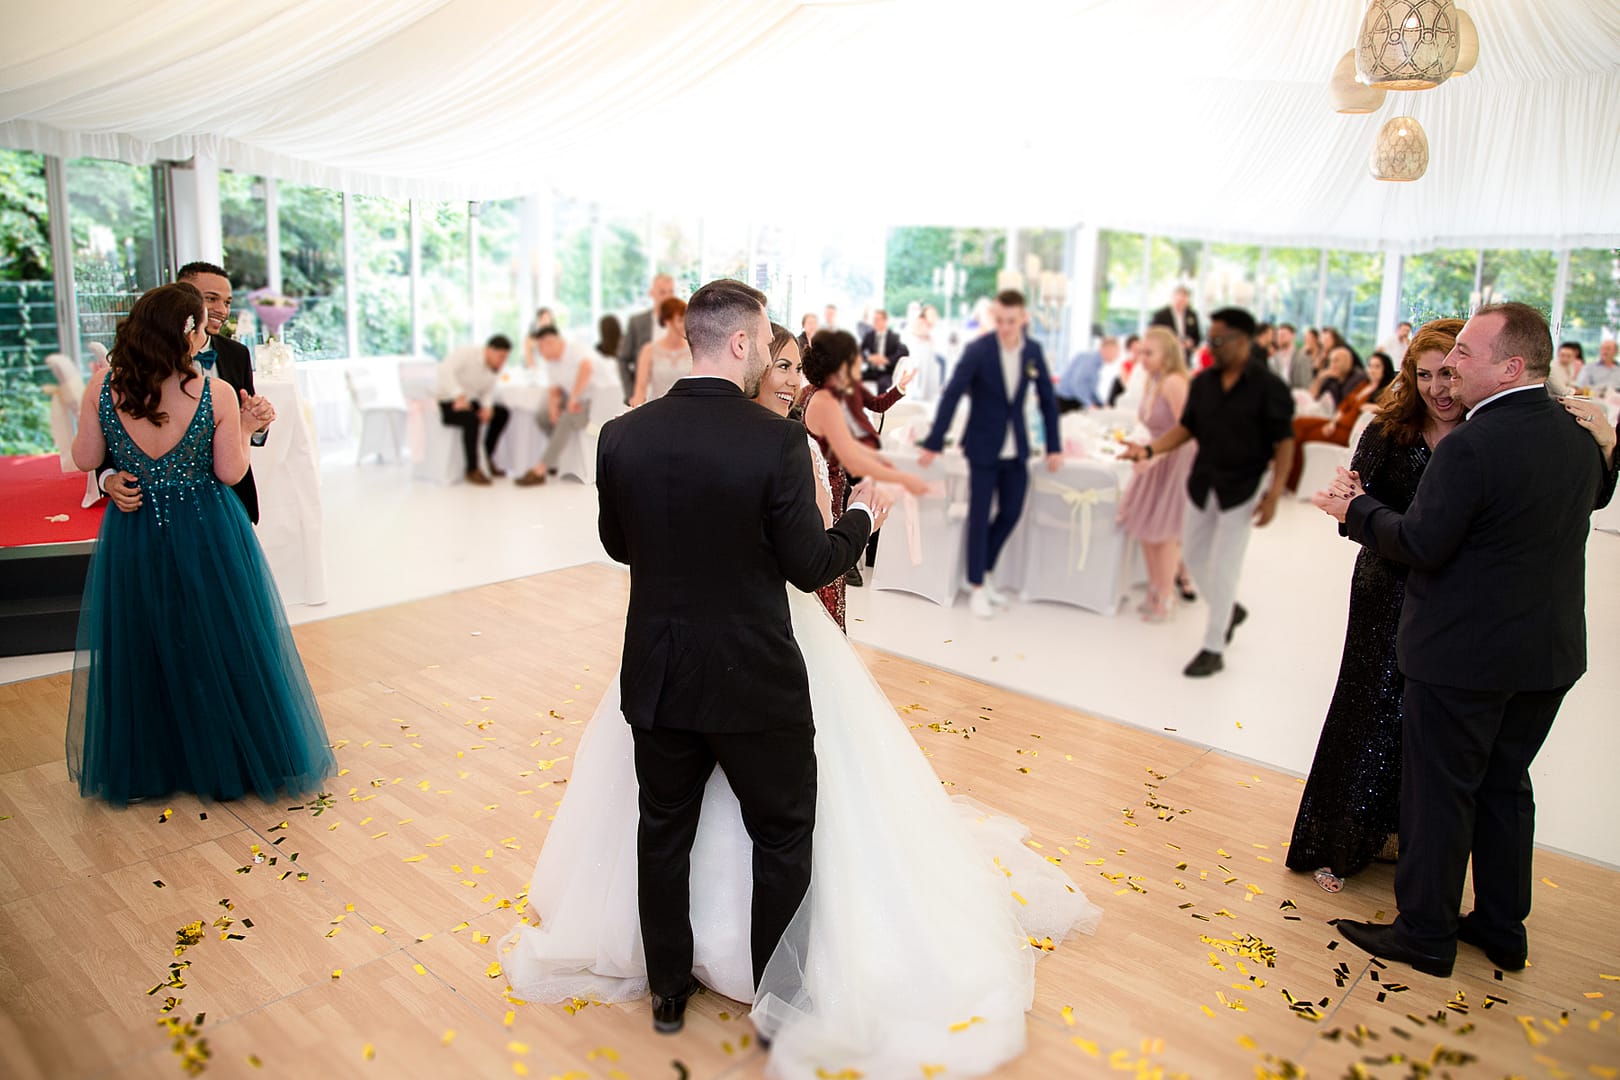 Das Brautpaar tanzt ihren Eröffungstanz mitten auf der Tanzfläche. Auch Gäste tanzen mit.